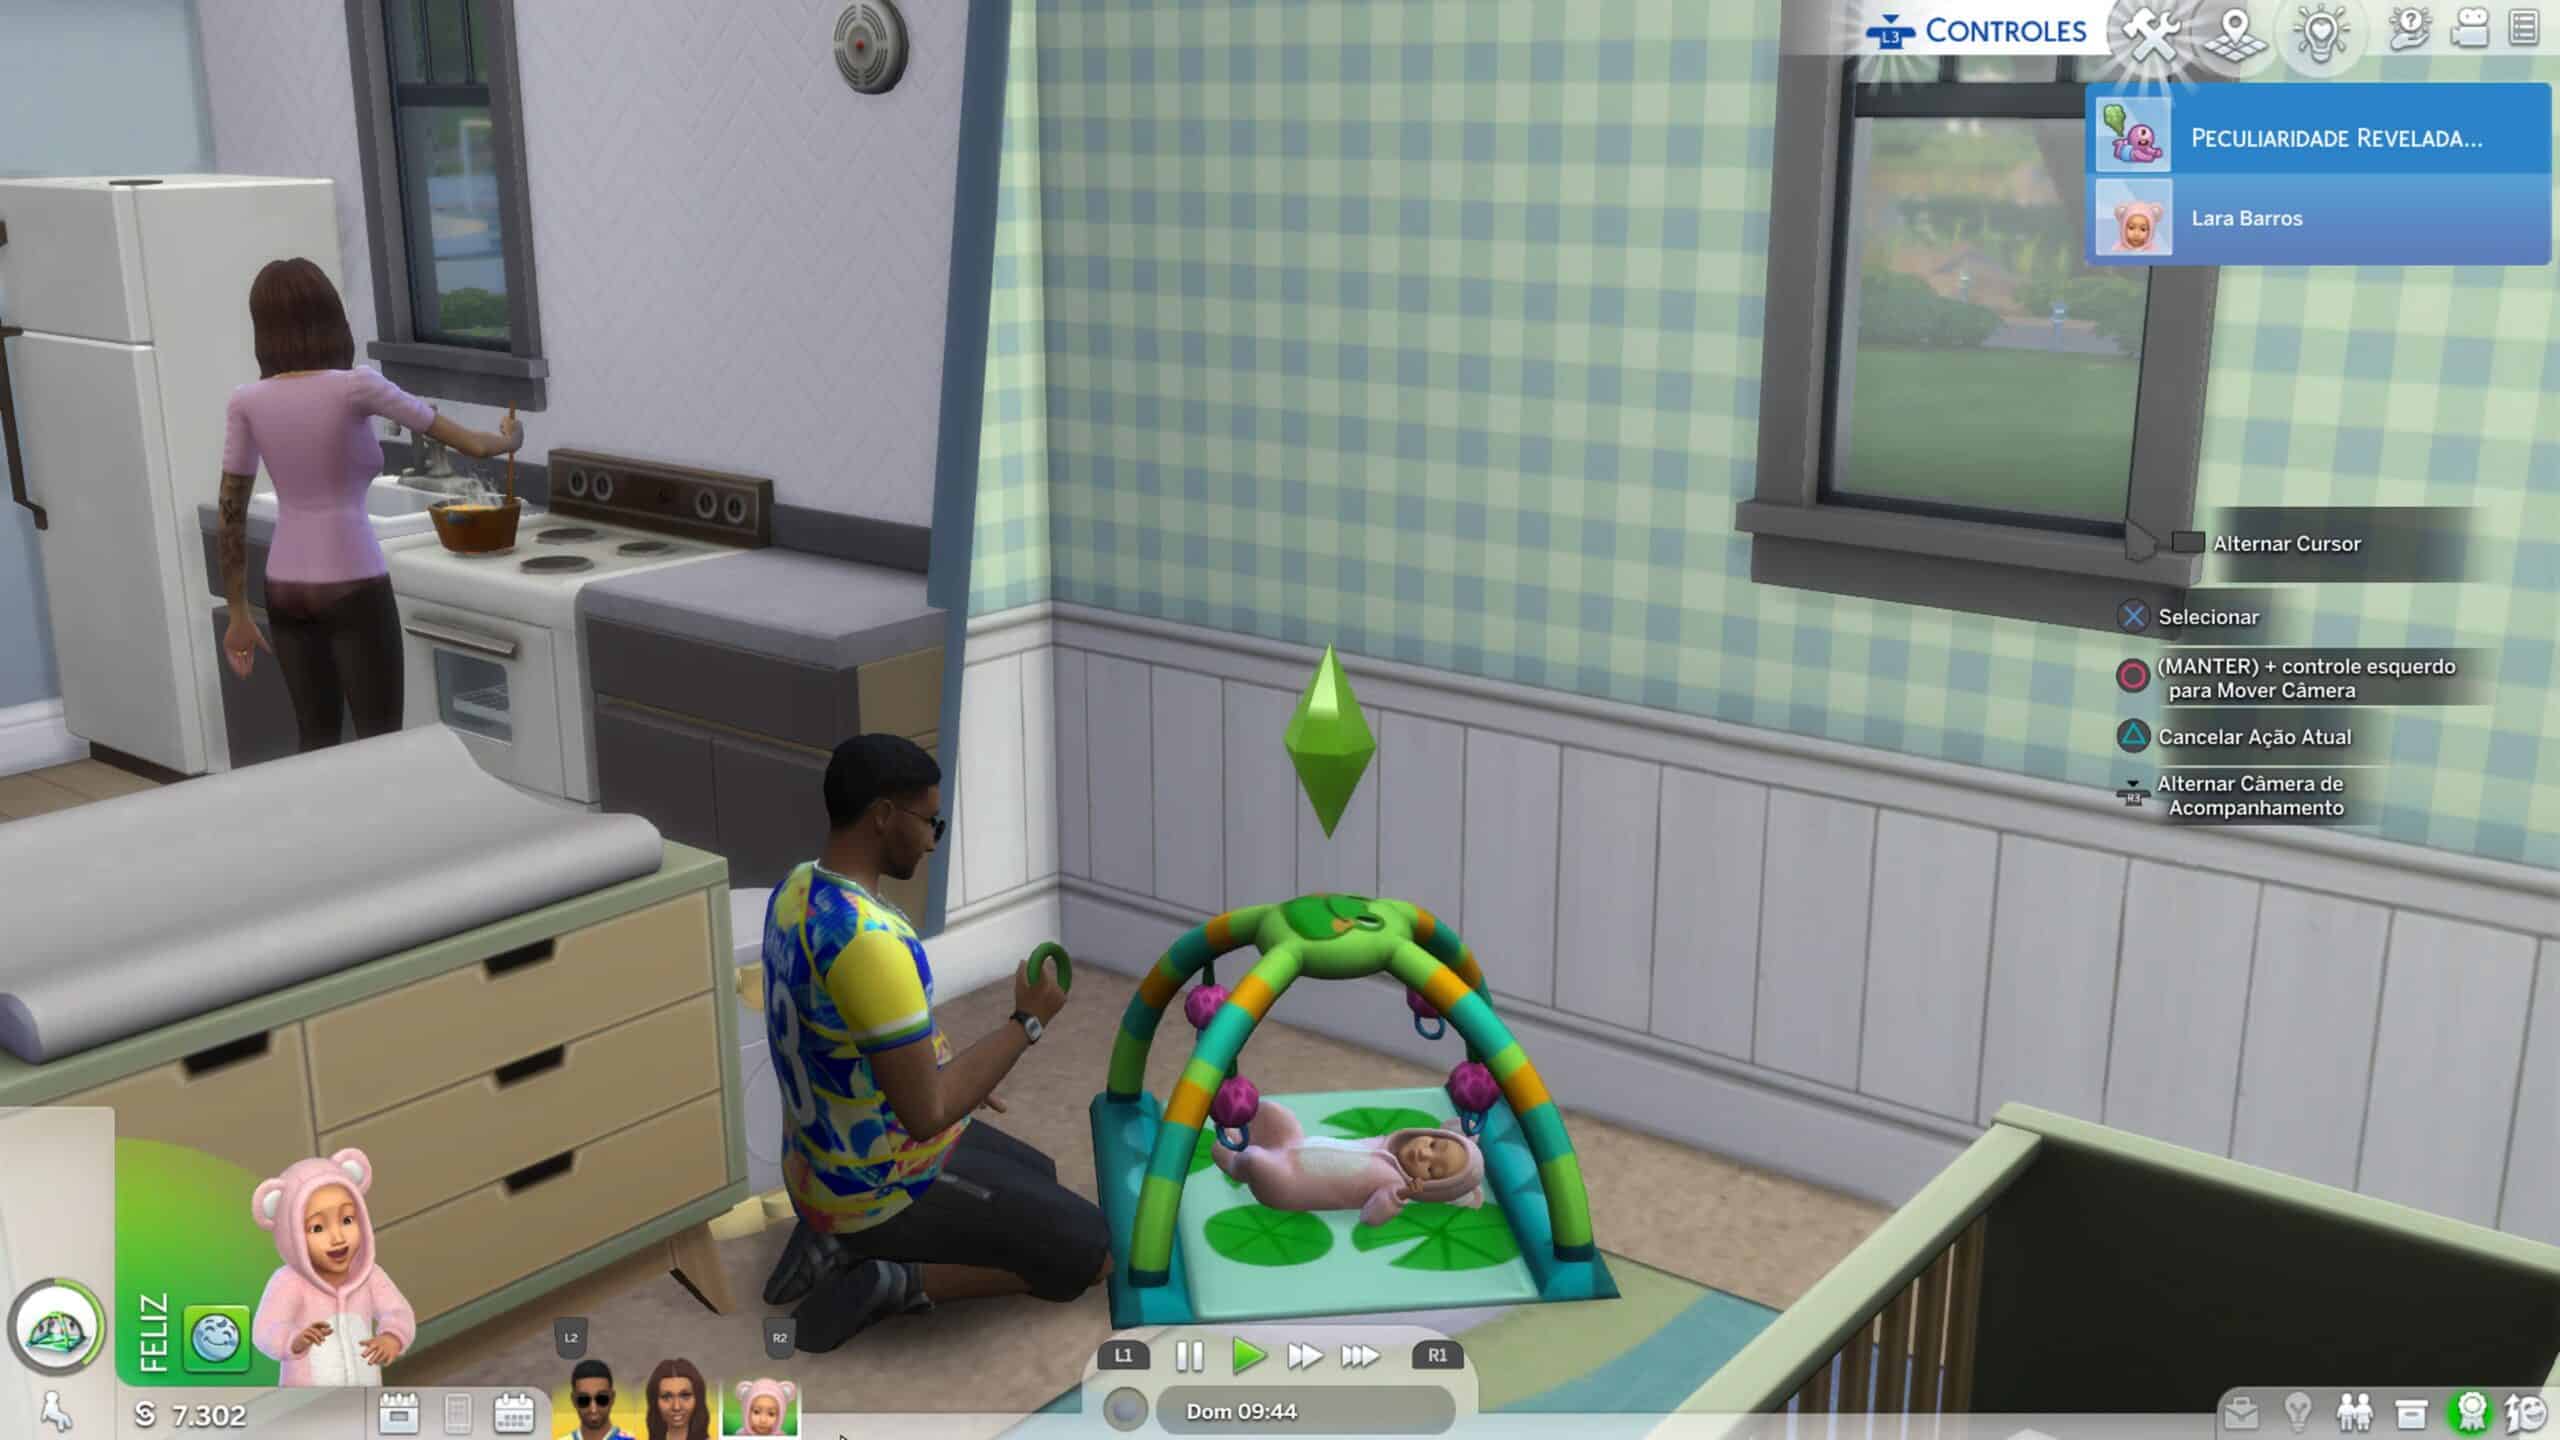 The Sims 4 Pacote de Expansão A Aventura de Crescer - PC